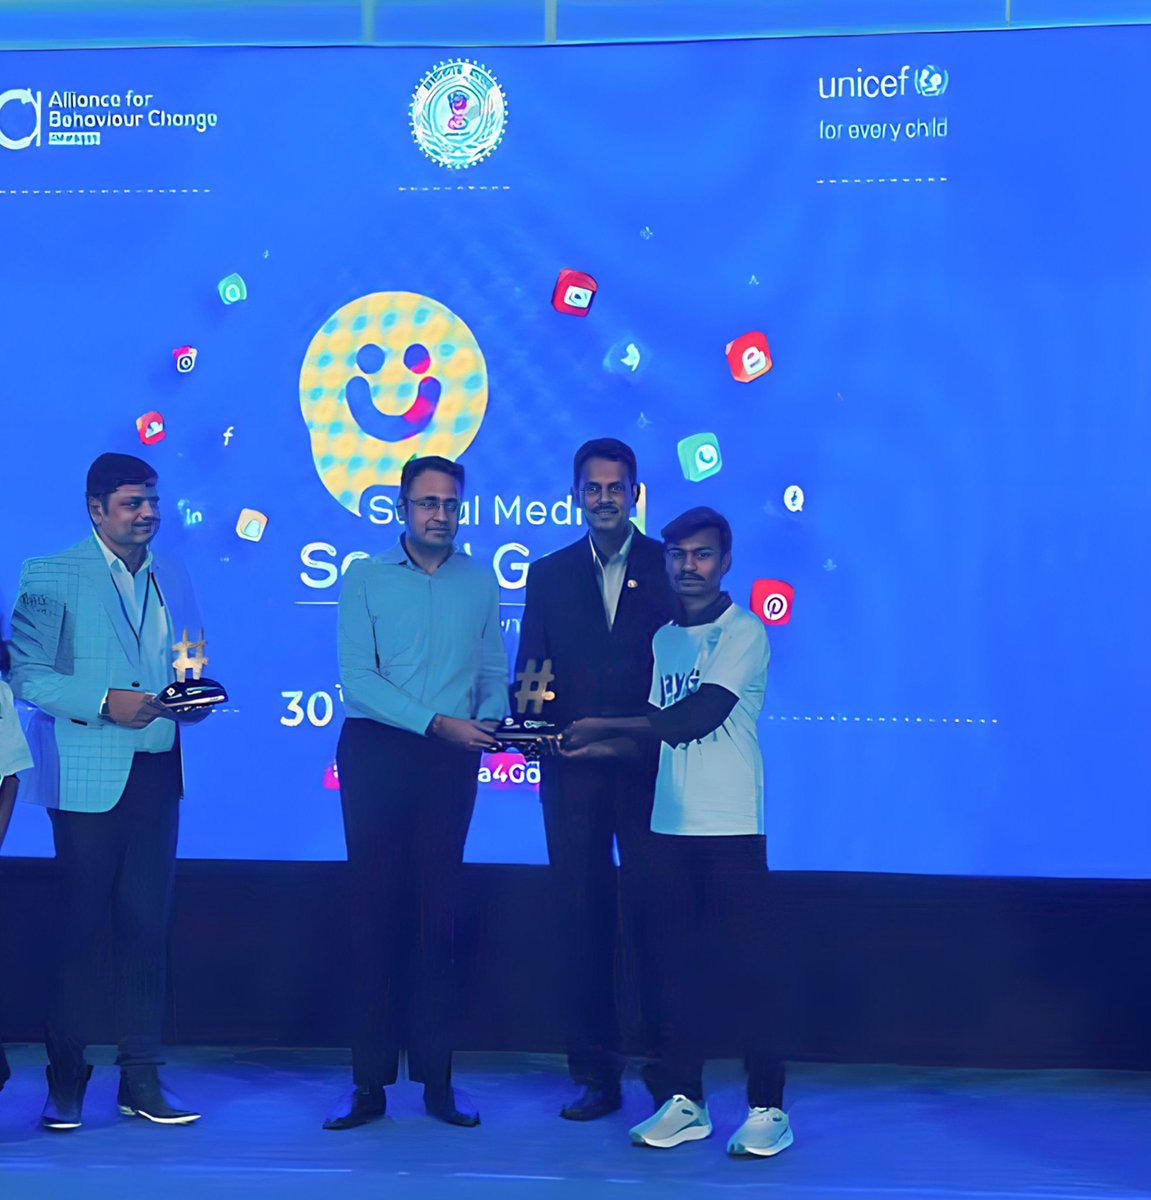 #SocialMediaDay पर @UNICEFIndia और @ChhattisgarhABC द्वारा आयोजित कार्यक्रम में JayHo के वॉलंटियर सोशल मीडिया में एक्टिव रूप से काम कर रहे 2 वॉलिंटियर को यूनिसेफ छत्तीसगढ के प्रमुख @jobzachariah और @DPRChhattisgarh के द्वारा सम्मानित किया गया। #SocialMedia4Good